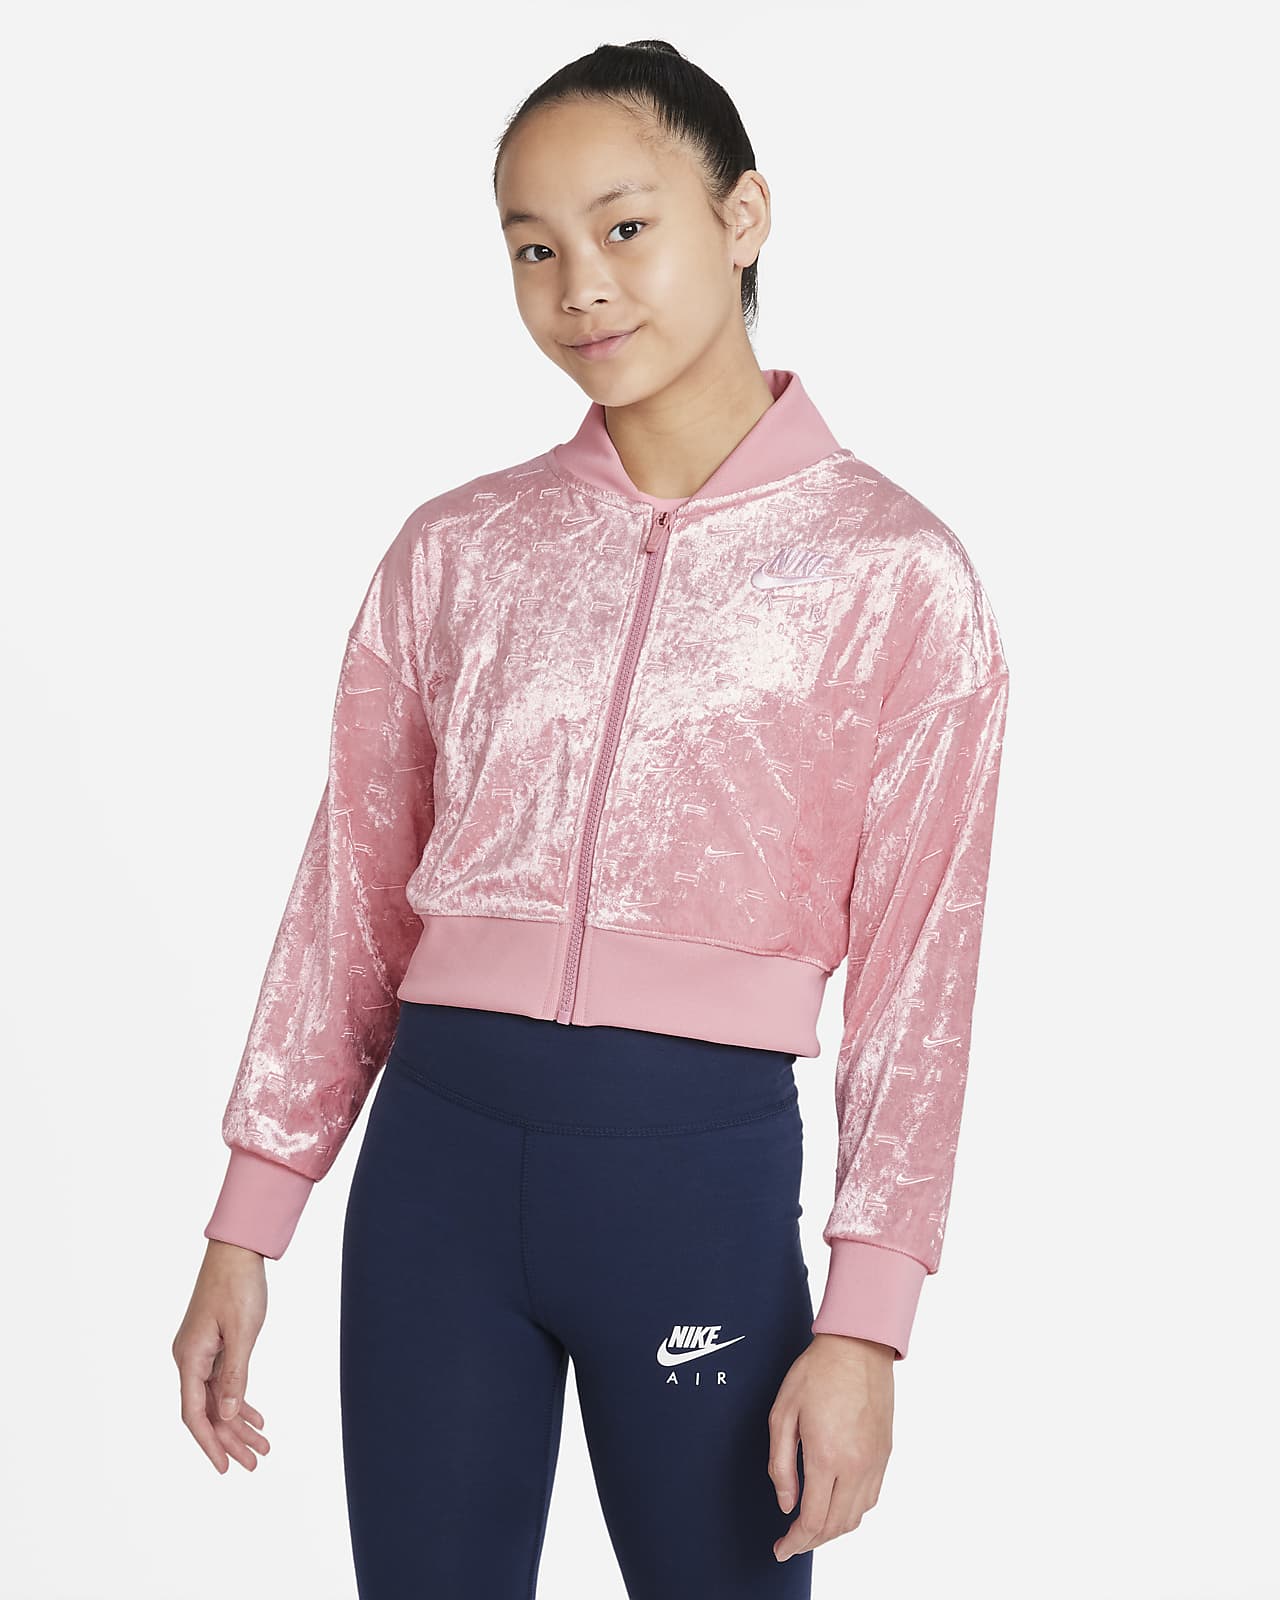 เสื้อแจ็คเก็ตเอวลอยเด็กโต Nike Air (หญิง)